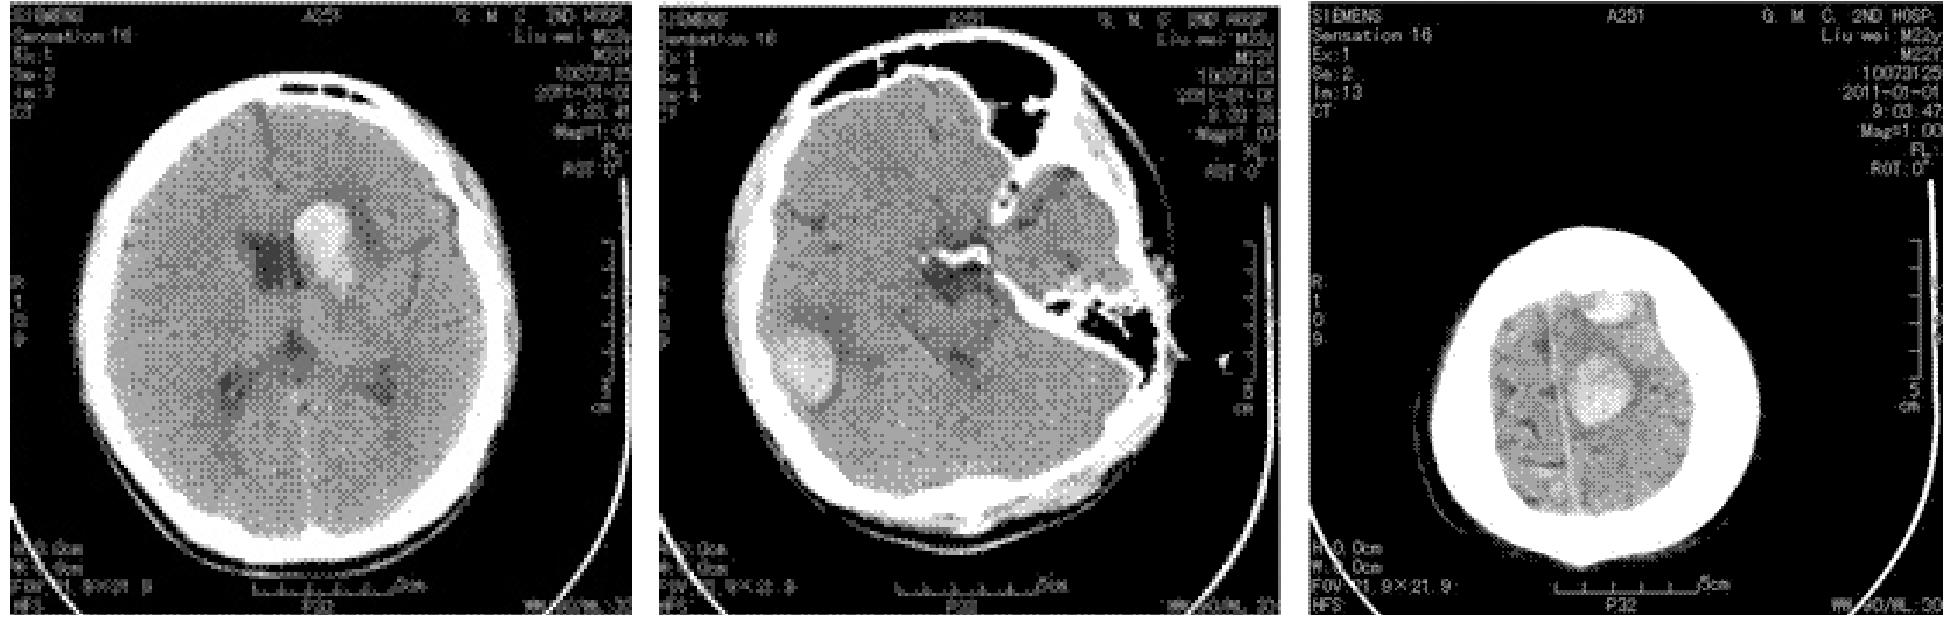 以脑出血为首发表现的肝豆状核变性一例